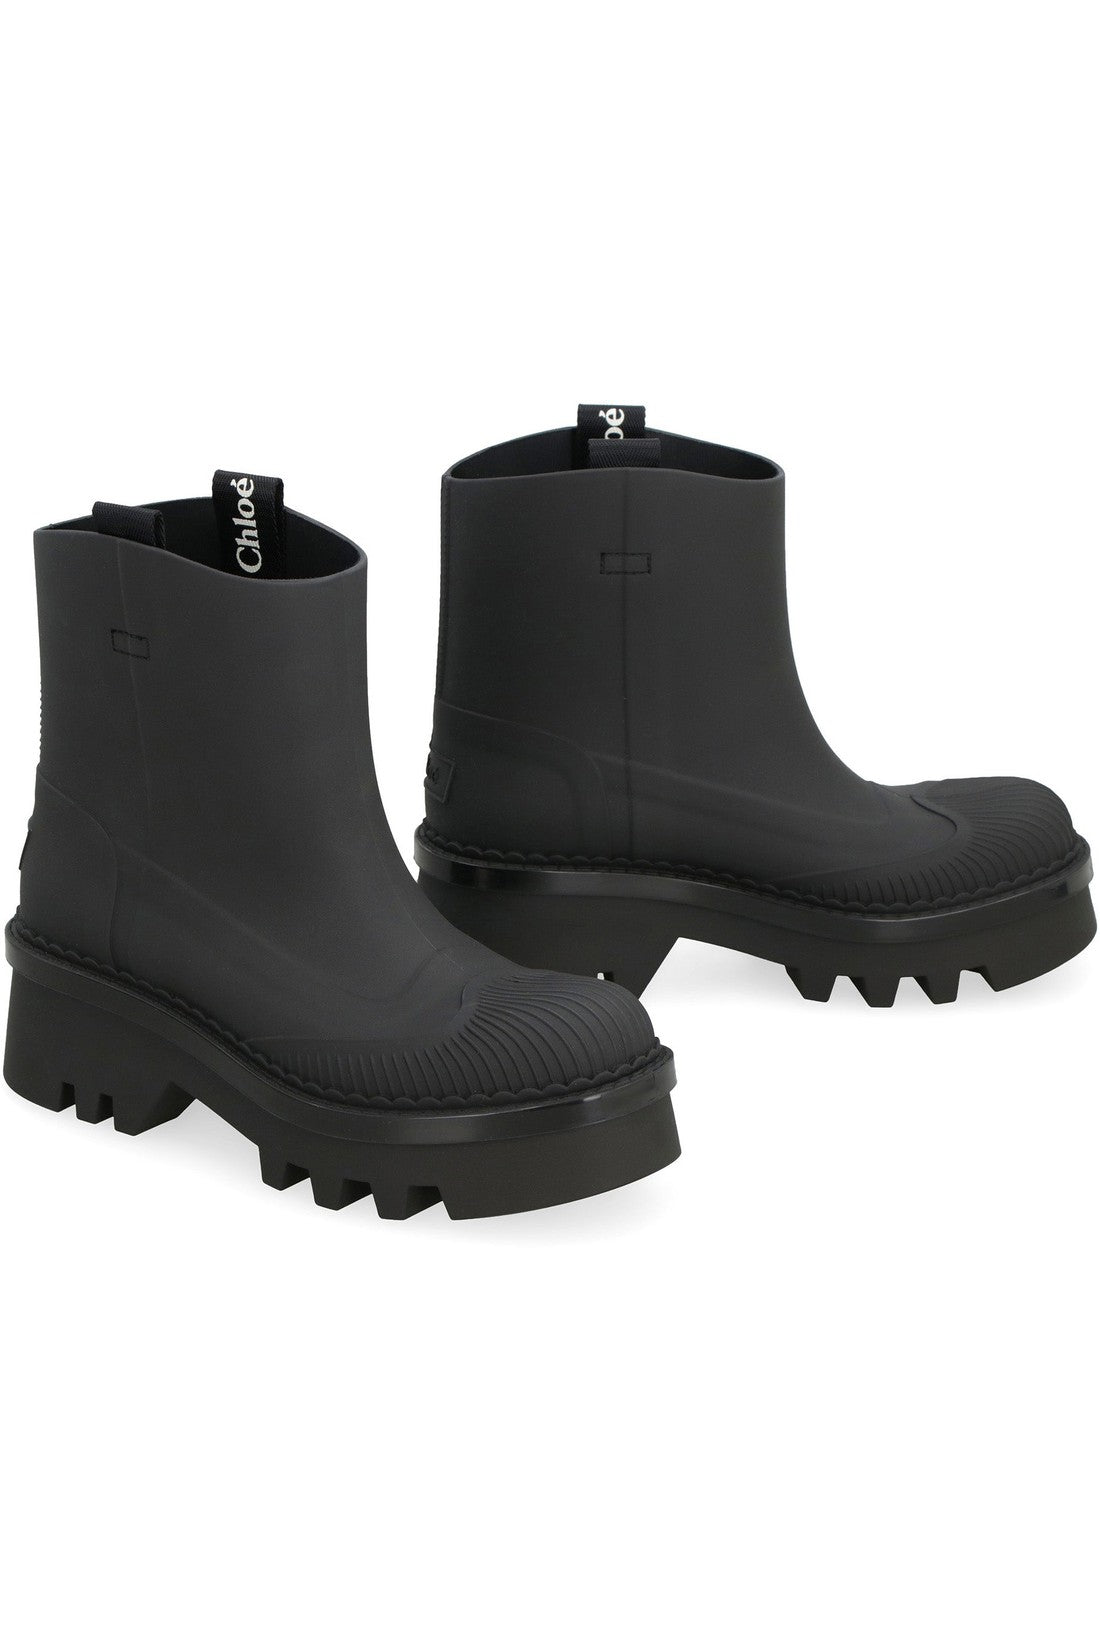 Chloé-OUTLET-SALE-Raina rubber rain boots-ARCHIVIST